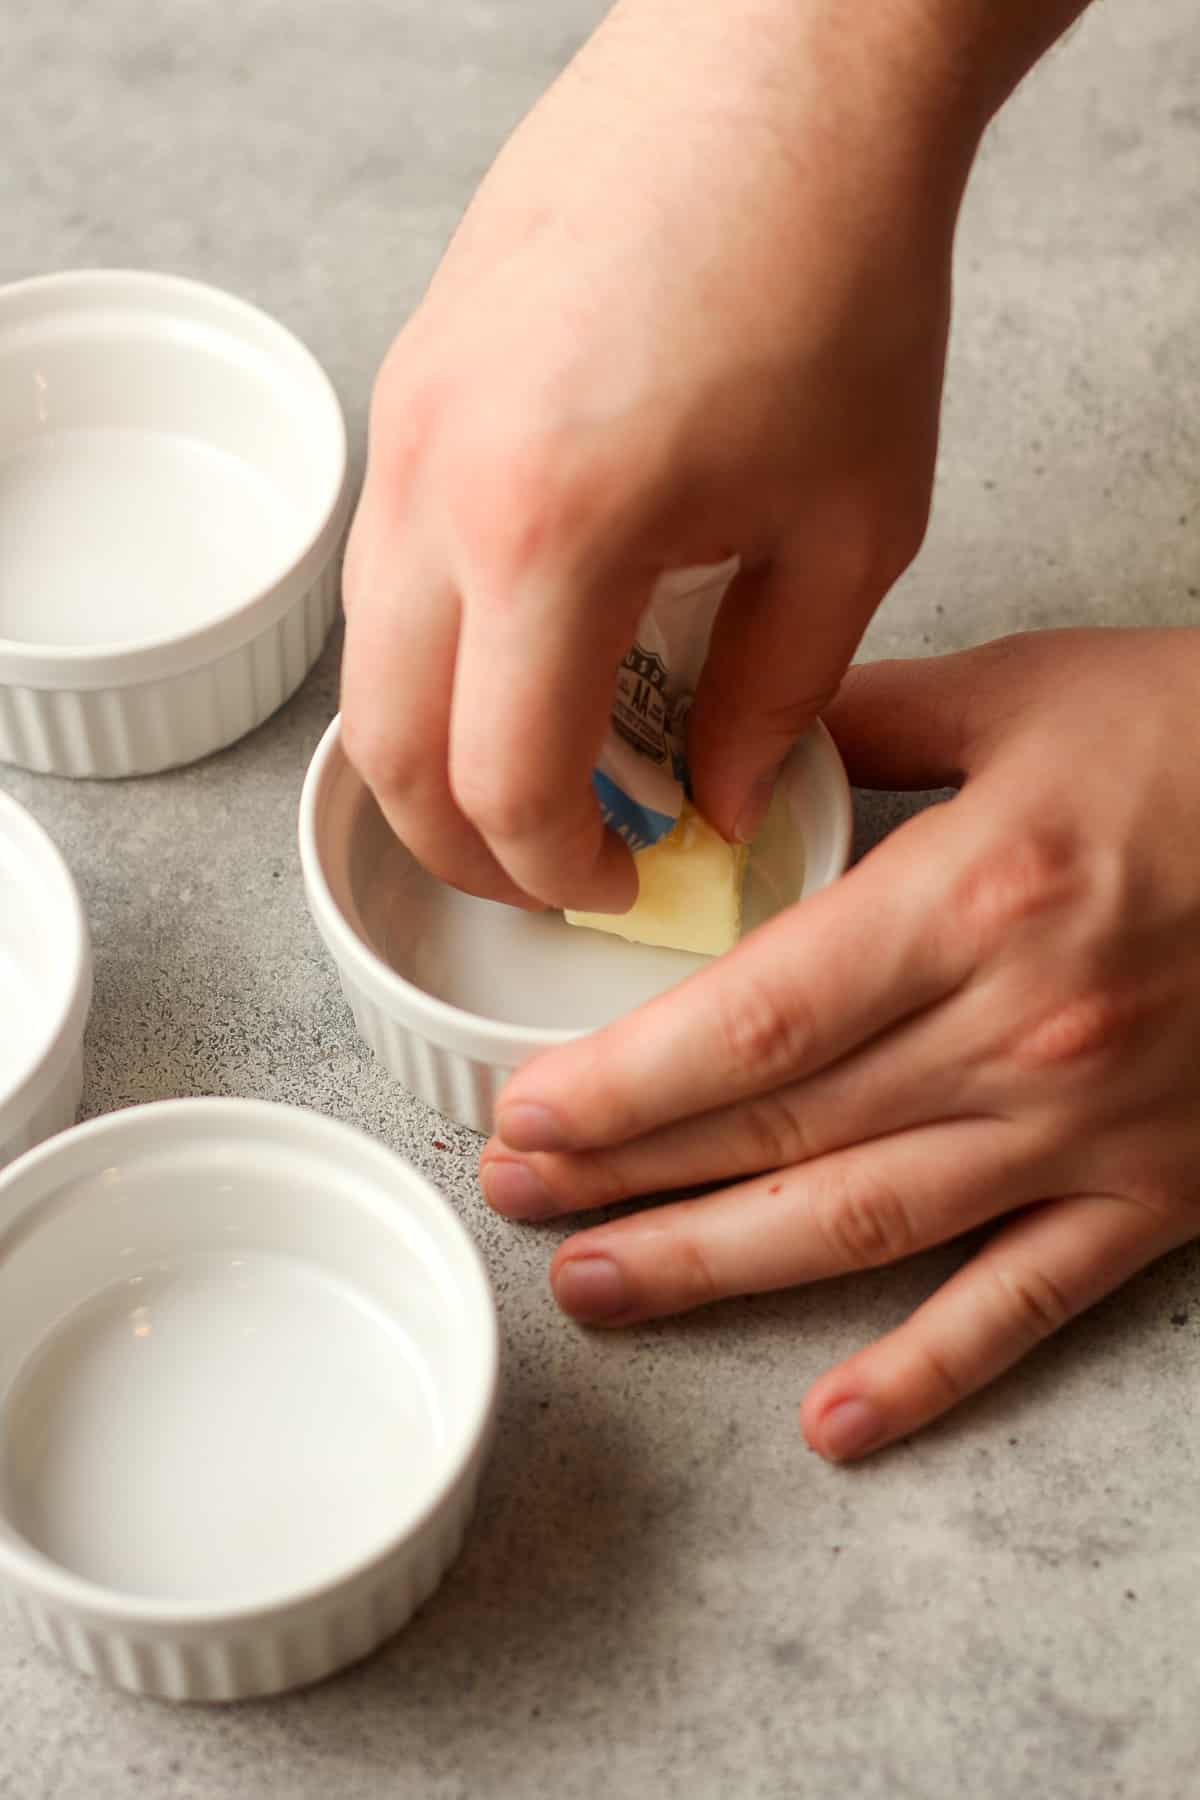 Hands rubbing the butter in the ramekin.